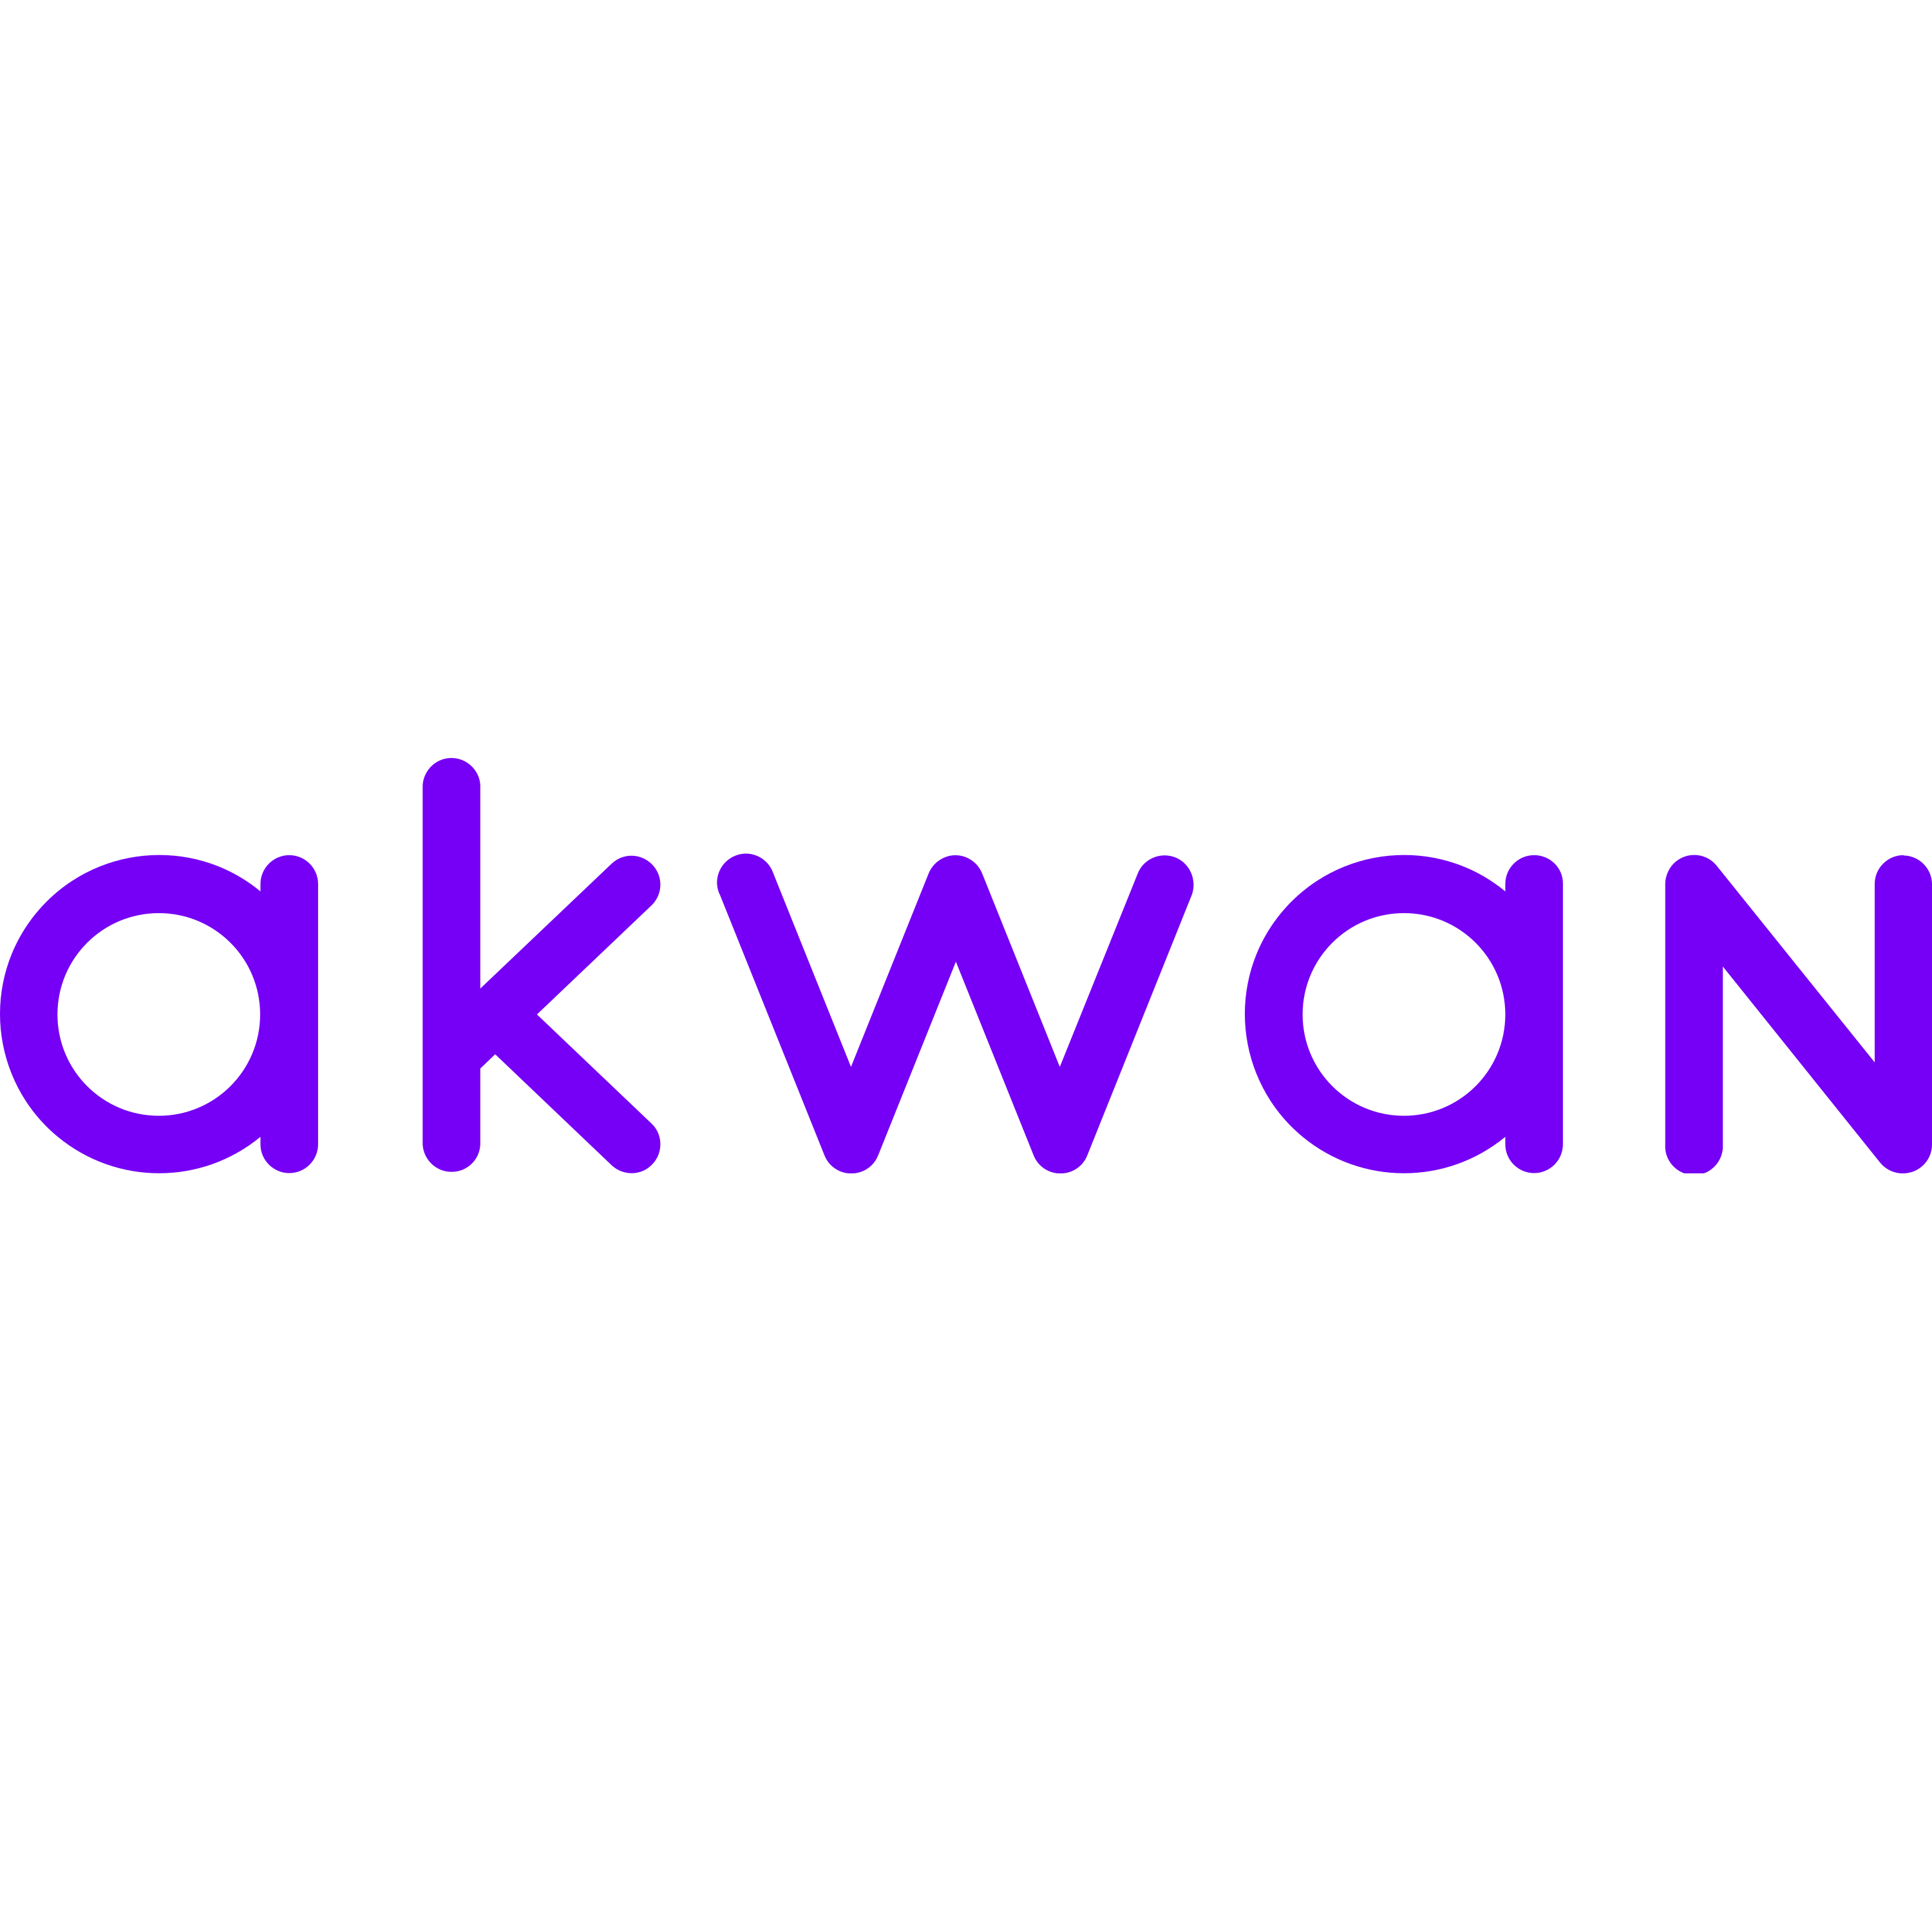 Akwan Logo  Transparent Image